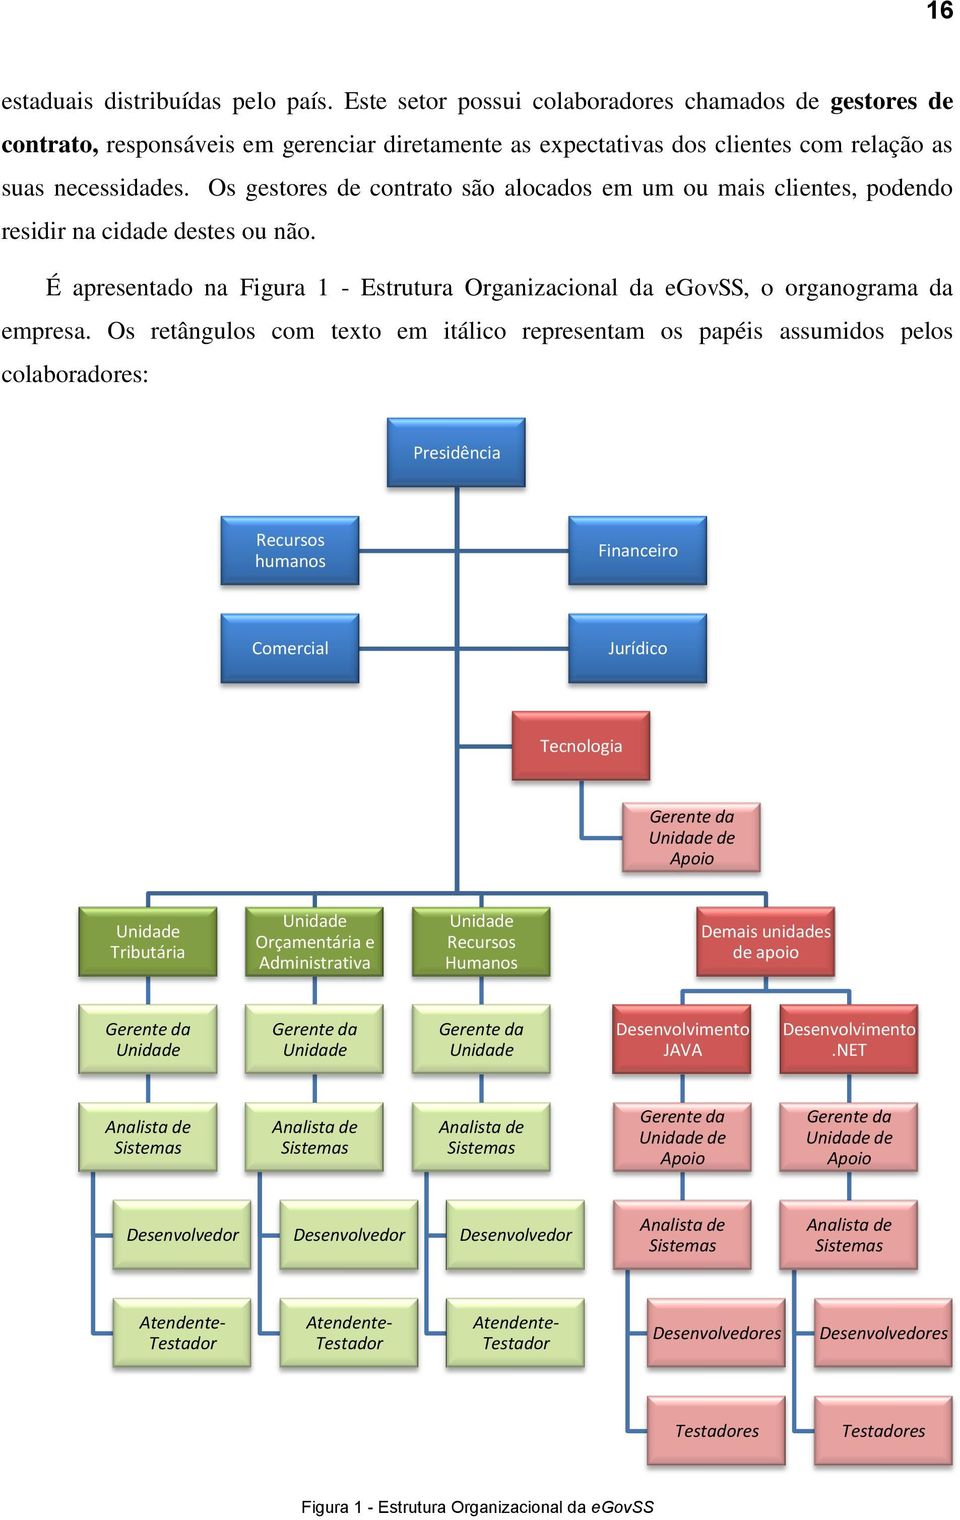 Os gestores de contrato são alocados em um ou mais clientes, podendo residir na cidade destes ou não. É apresentado na Figura 1 - Estrutura Organizacional da egovss, o organograma da empresa.